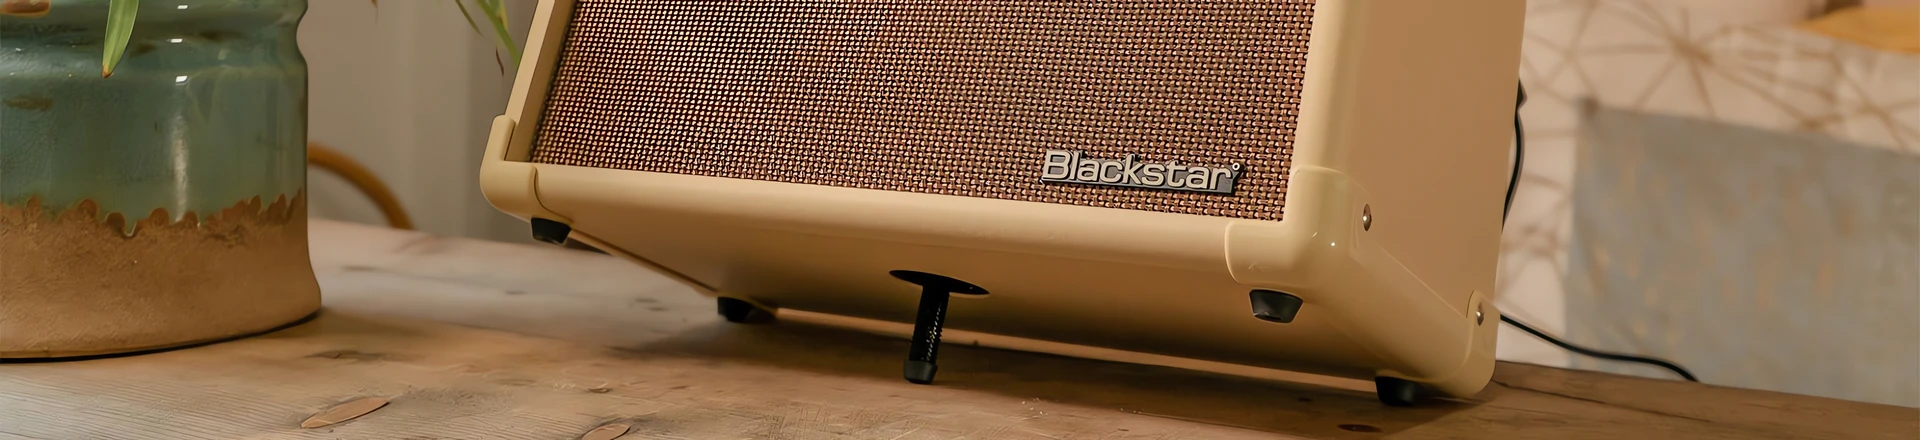 Blackstar prezentuje akustyczny wzmacniacz dla streamingowców